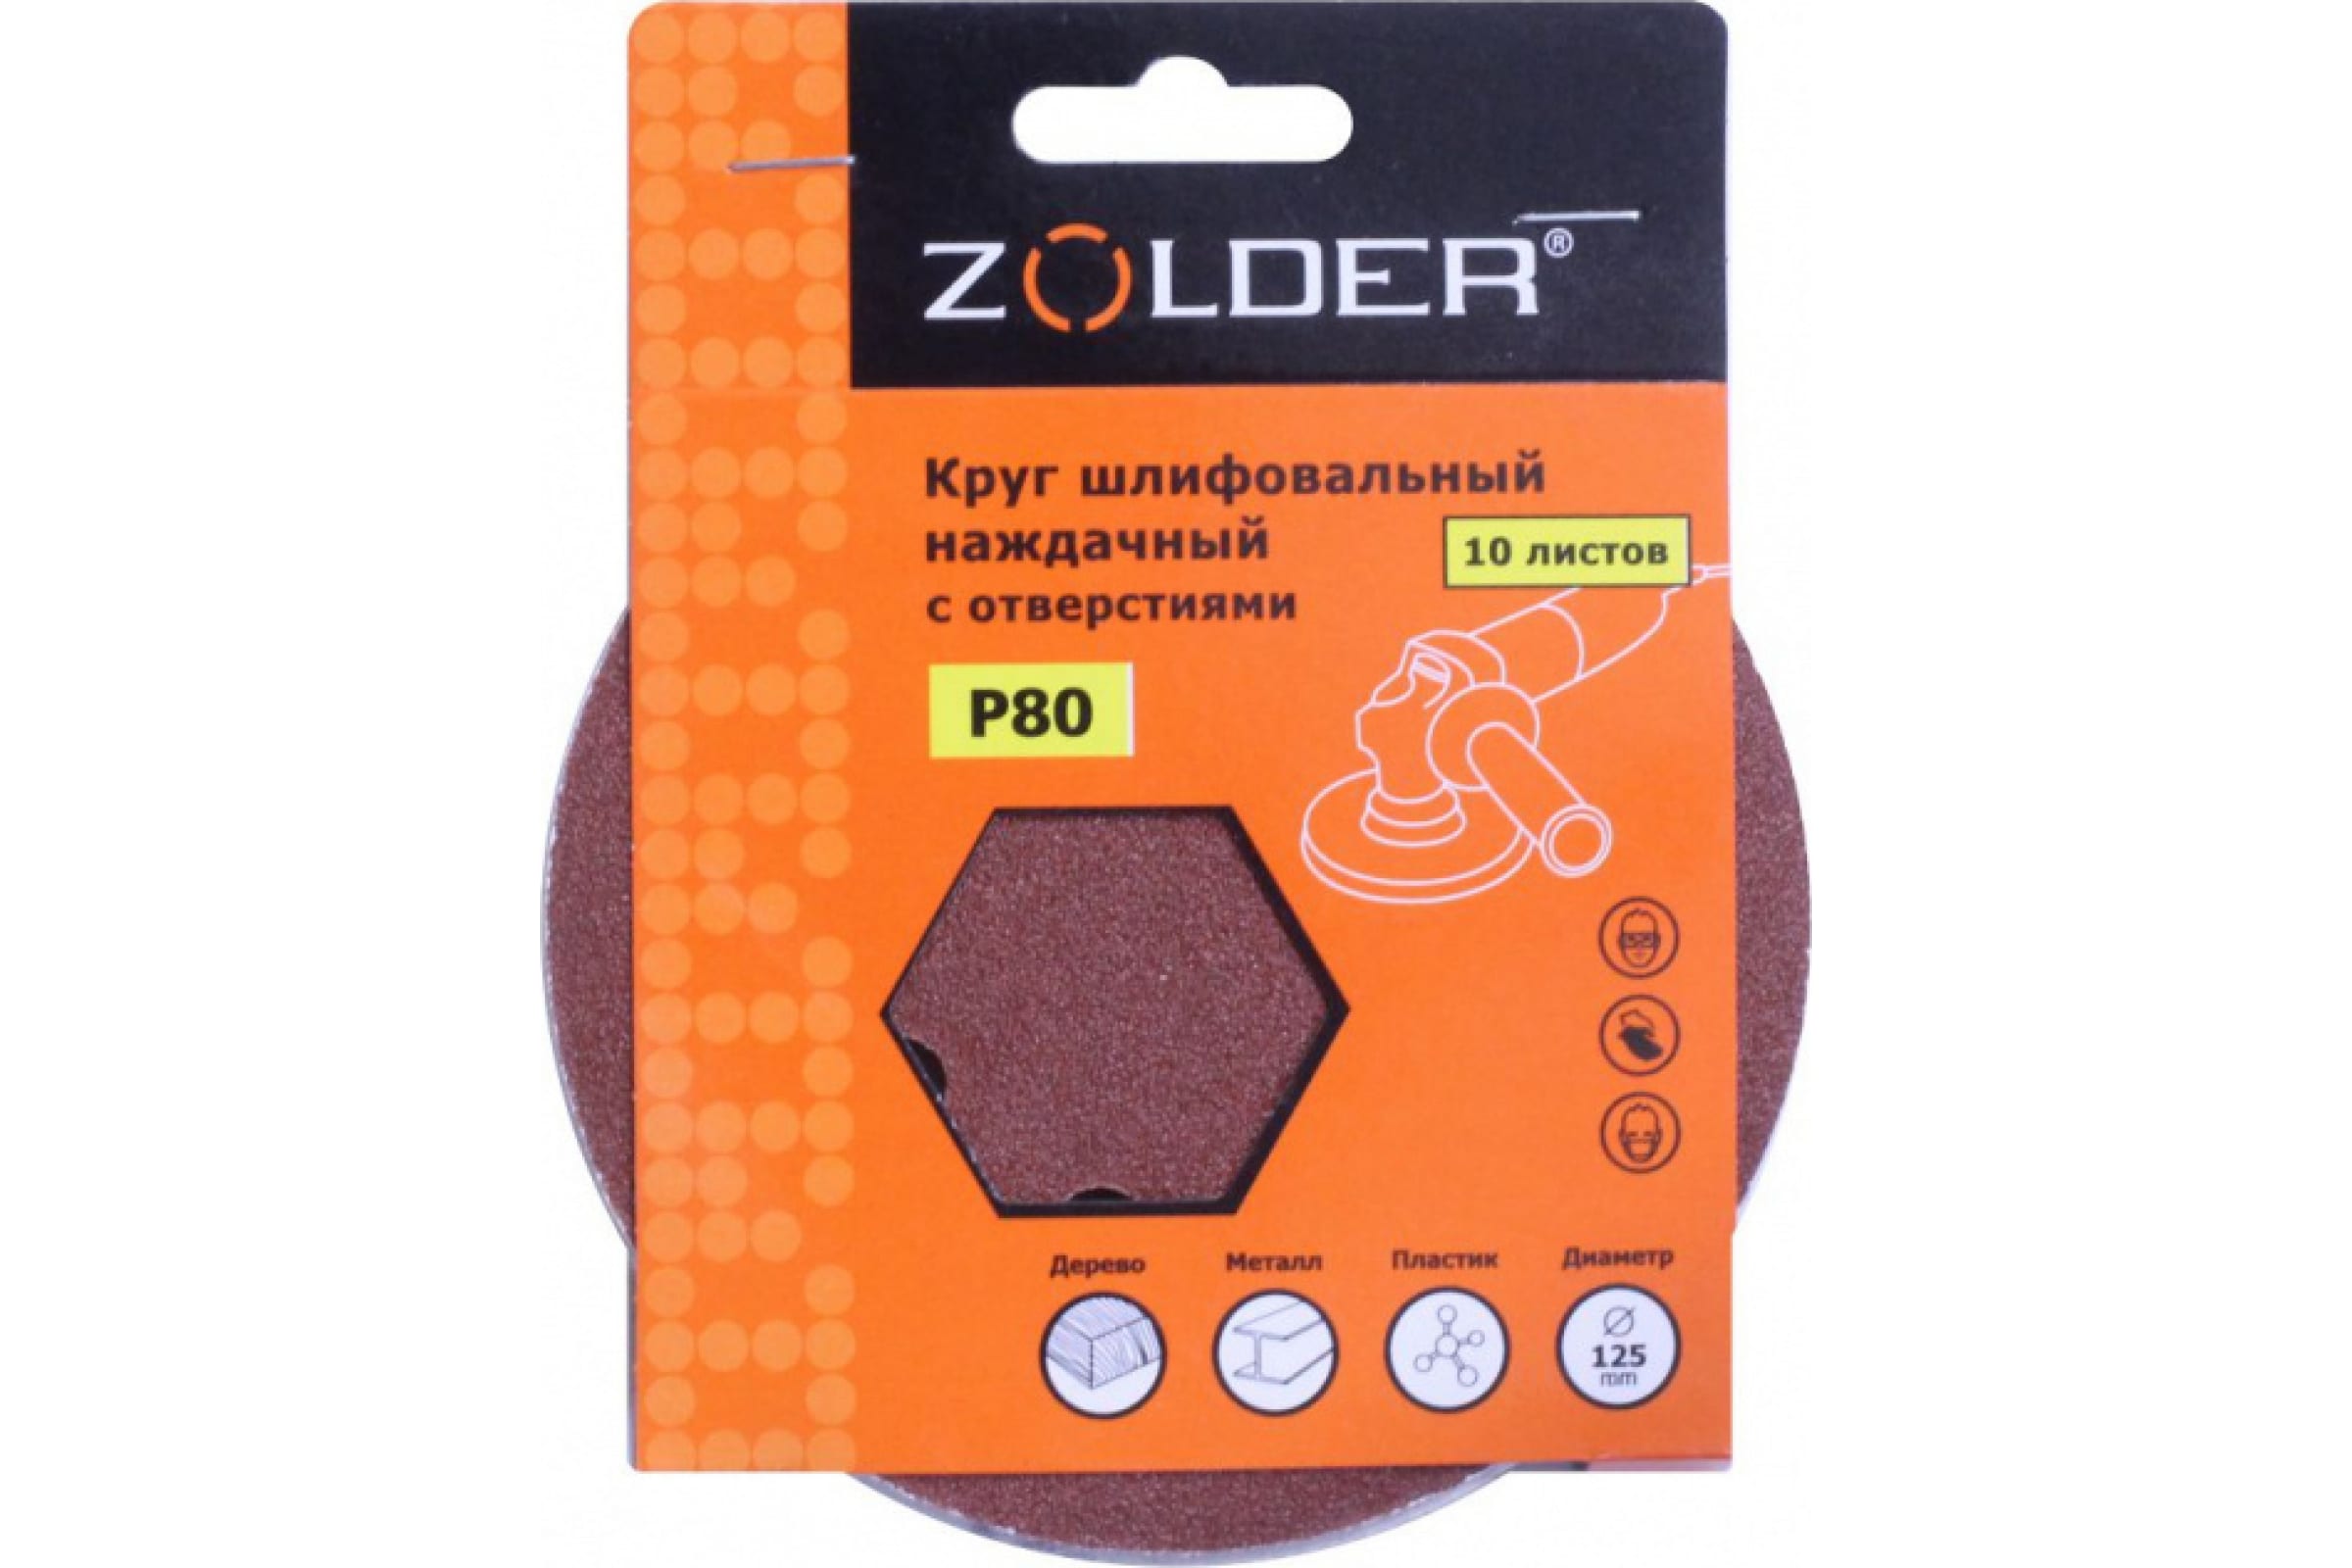 ZOLDER Круги шлифовальные наждачные 10шт/ P80, 125 мм, 8 отверстий, липучка / Z-108-808 наждачные круги шлифовальные zolder